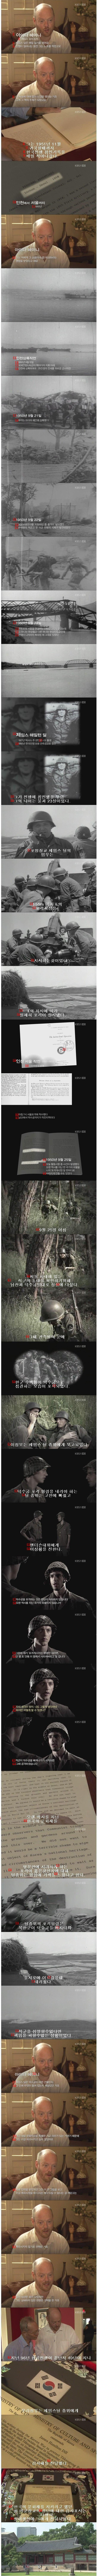 한국의 역사를 바꾼 미군 장교의 결정 jpg